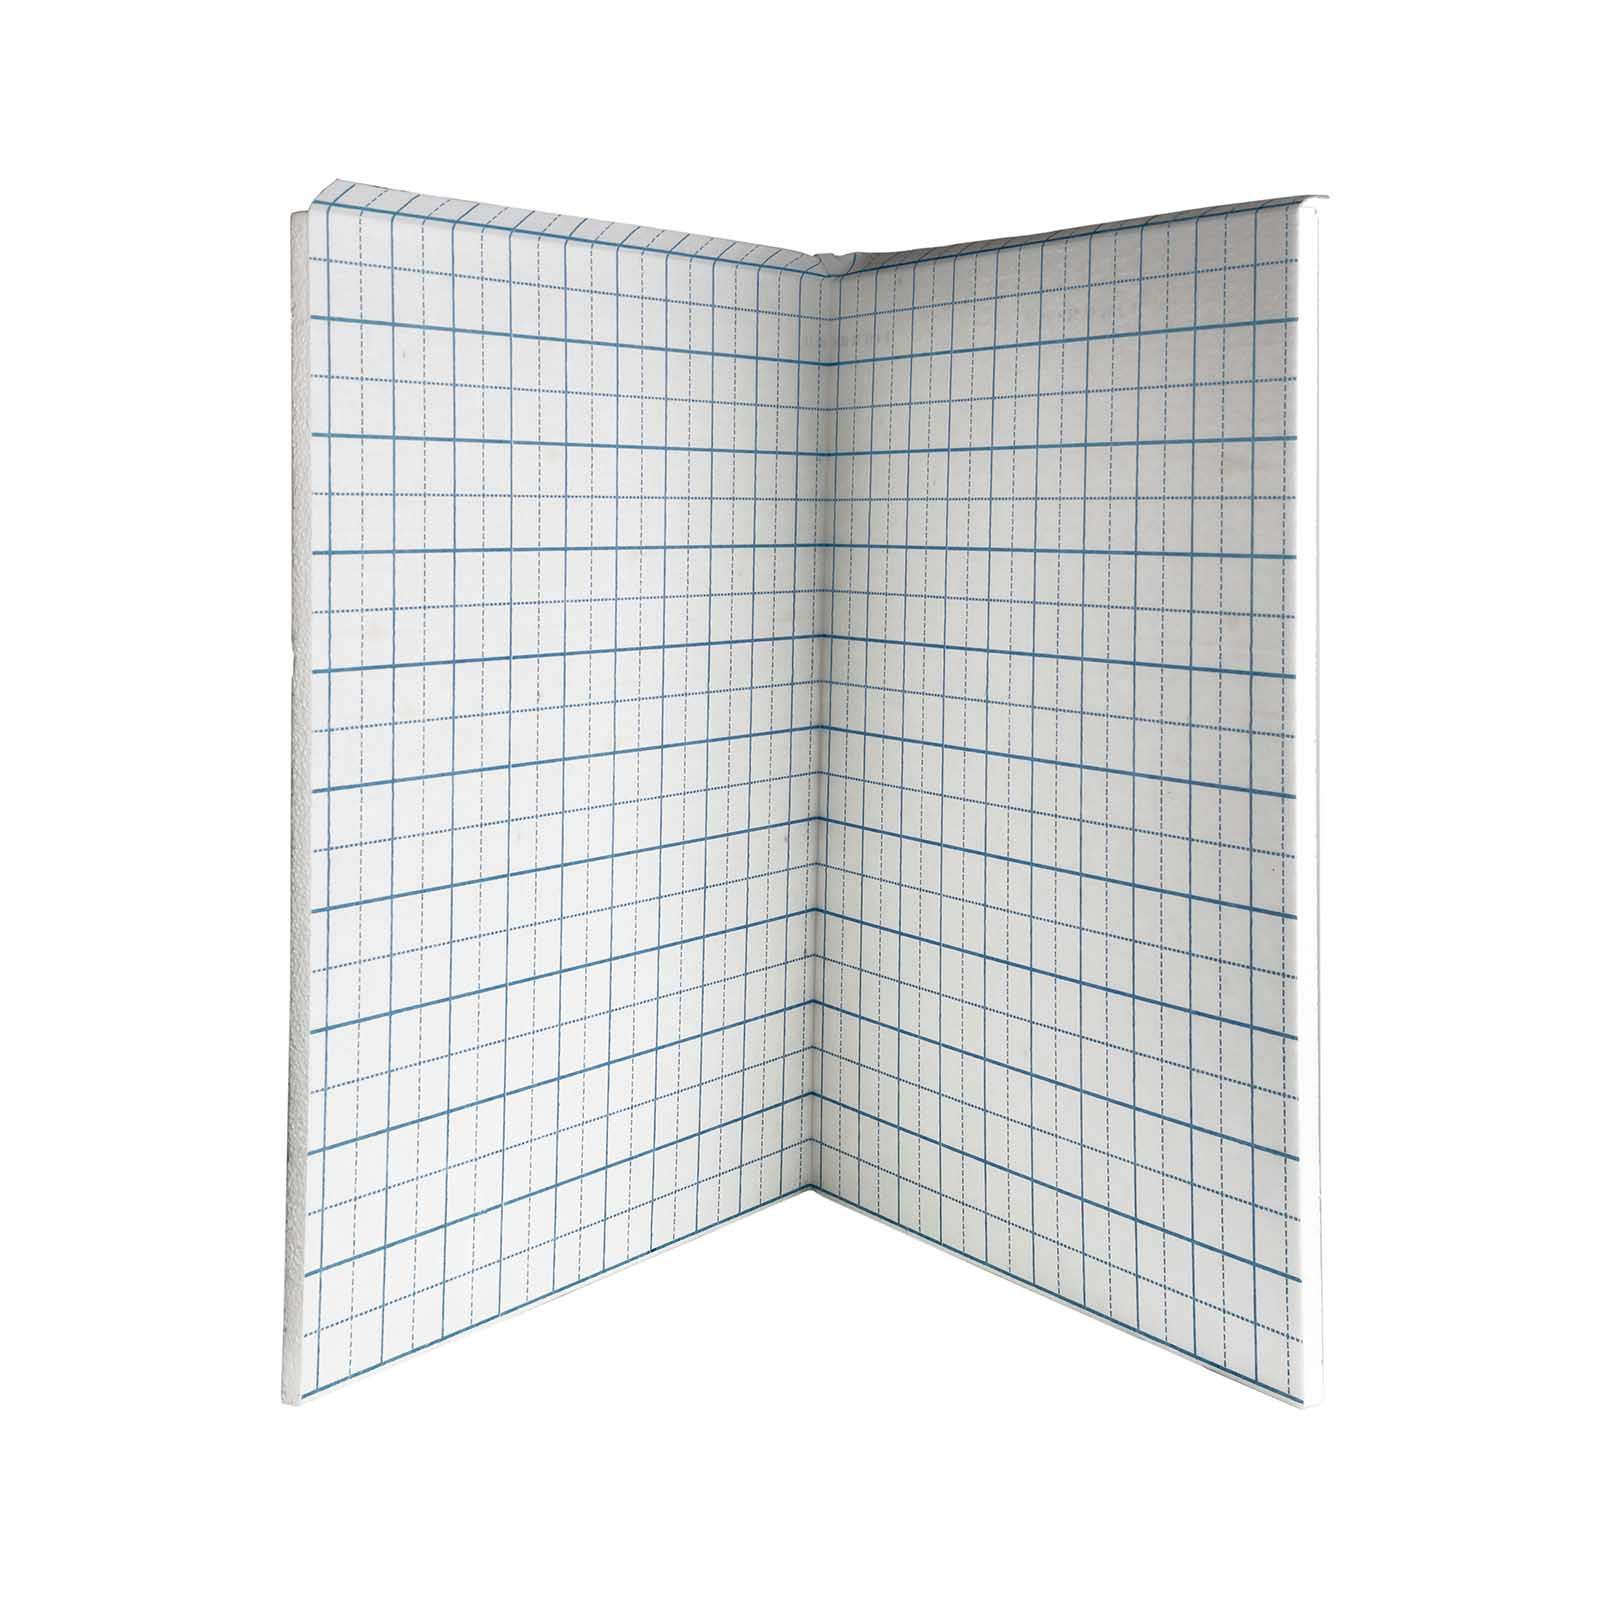 20 mm Klettplatte Faltplatte 20-2 WLG 045 10 m² Fußbodenheizung Klettsystem